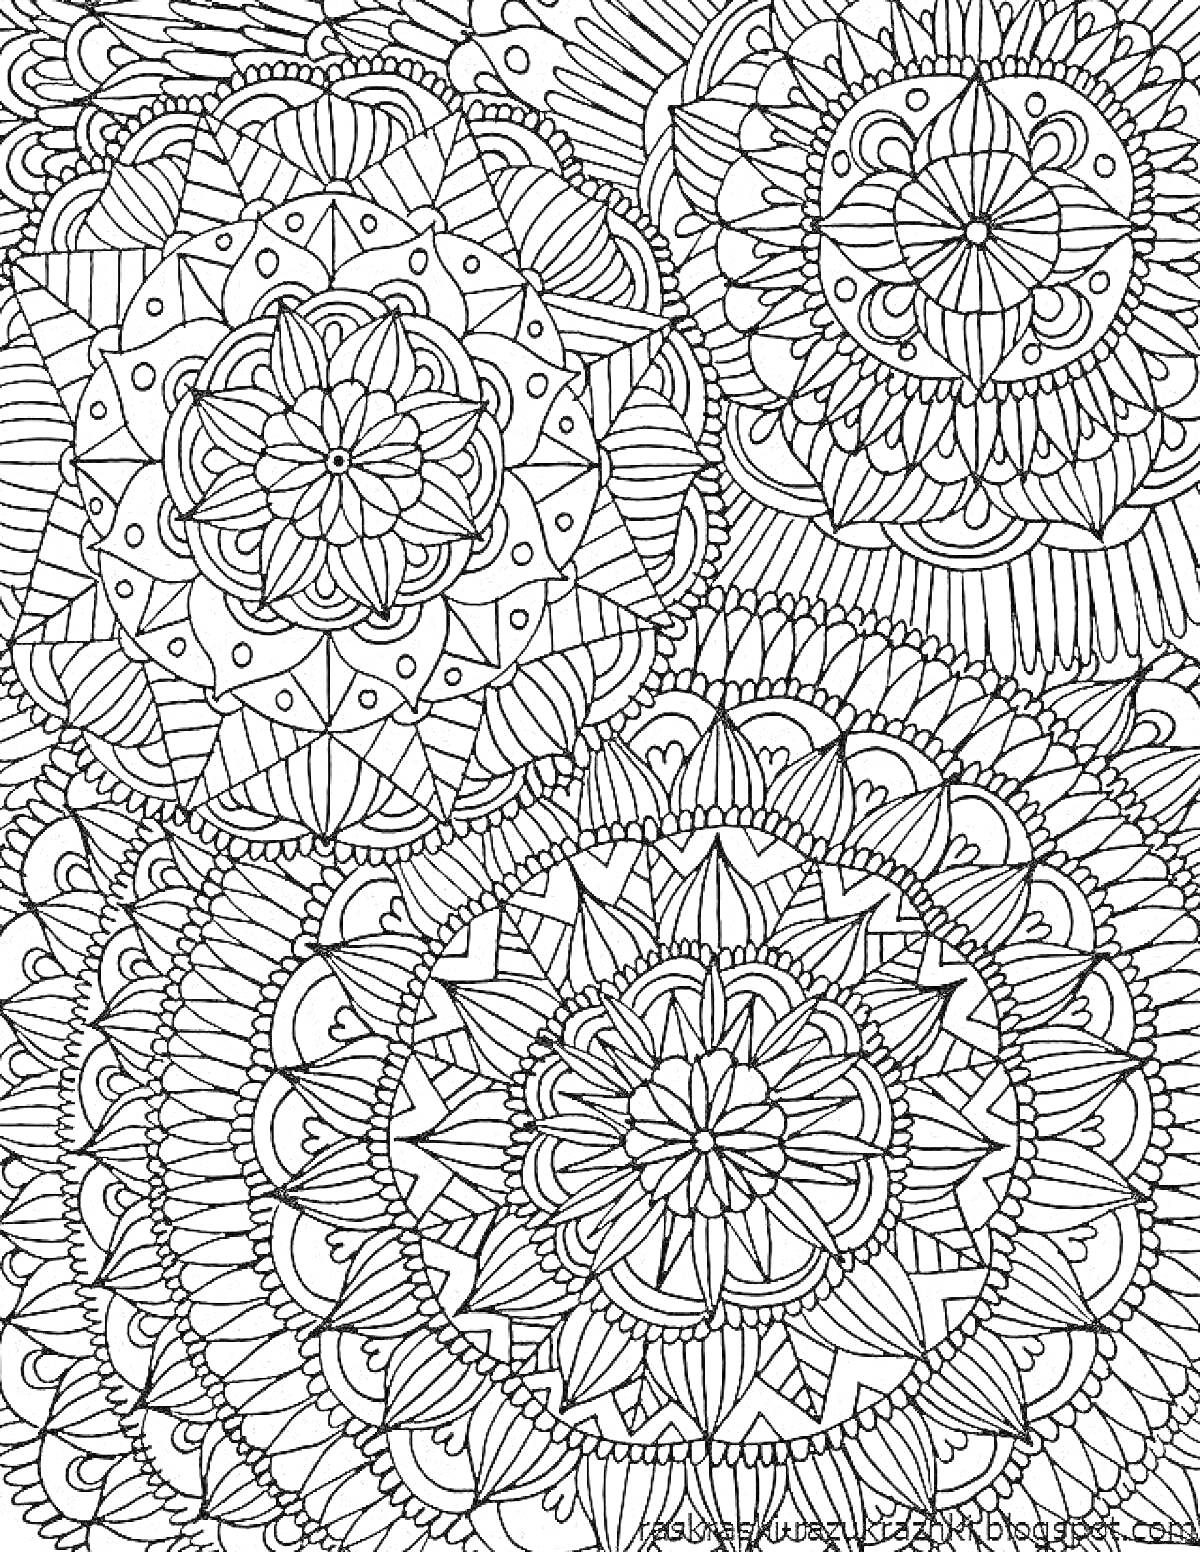 Раскраска Мандалы для релаксации с круговыми узорами и геометрическими элементами